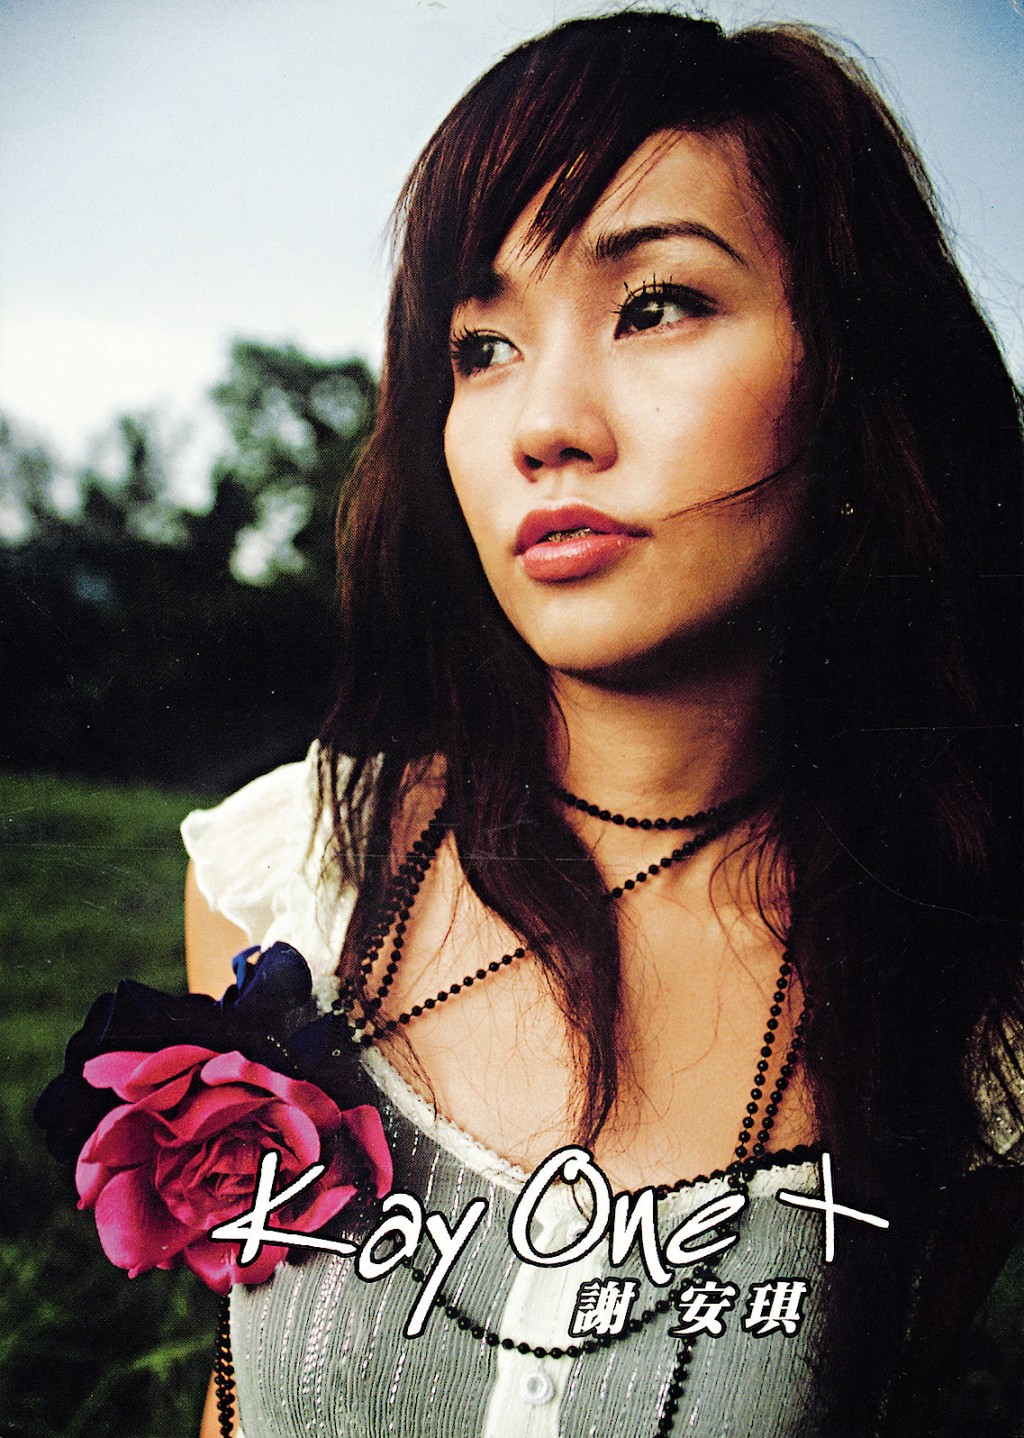 謝安琪2005年推出收張大碟《Kay One》出道。